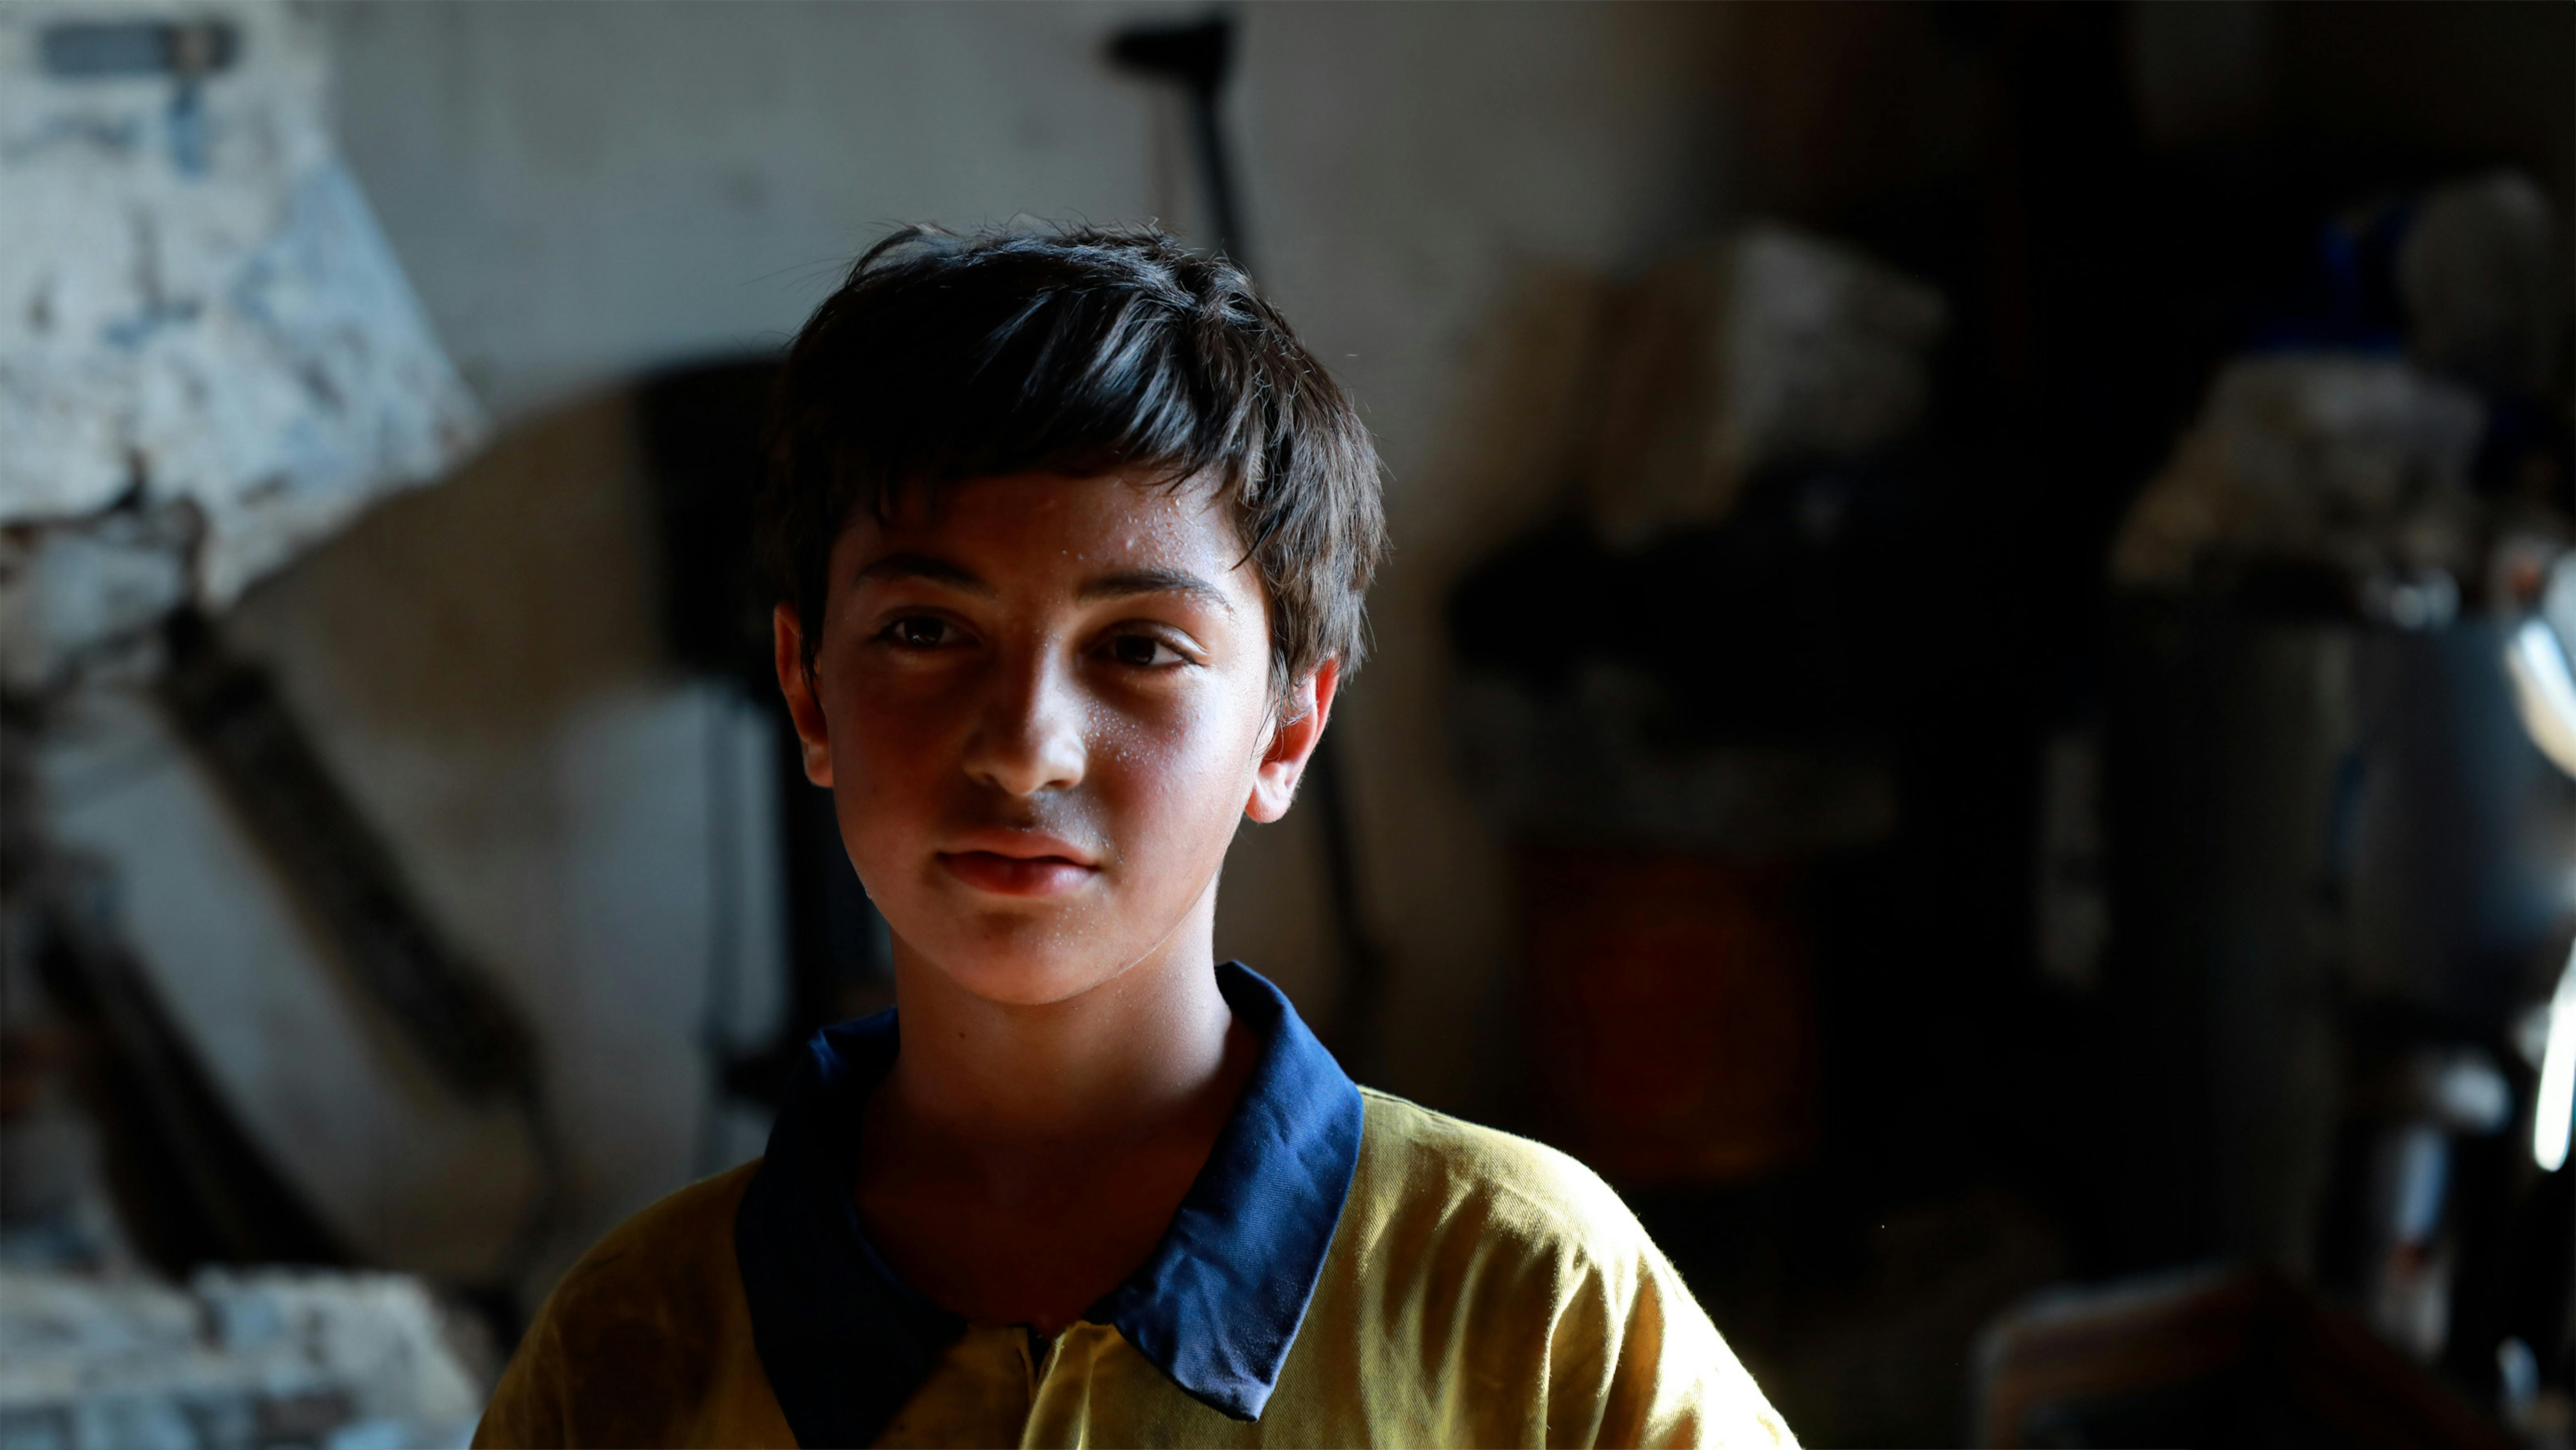 Libano - Bahaa, di 13 anni, ha deciso di lavorare durante l'estate per aiutare i suoi genitori a generare reddito per la famiglia